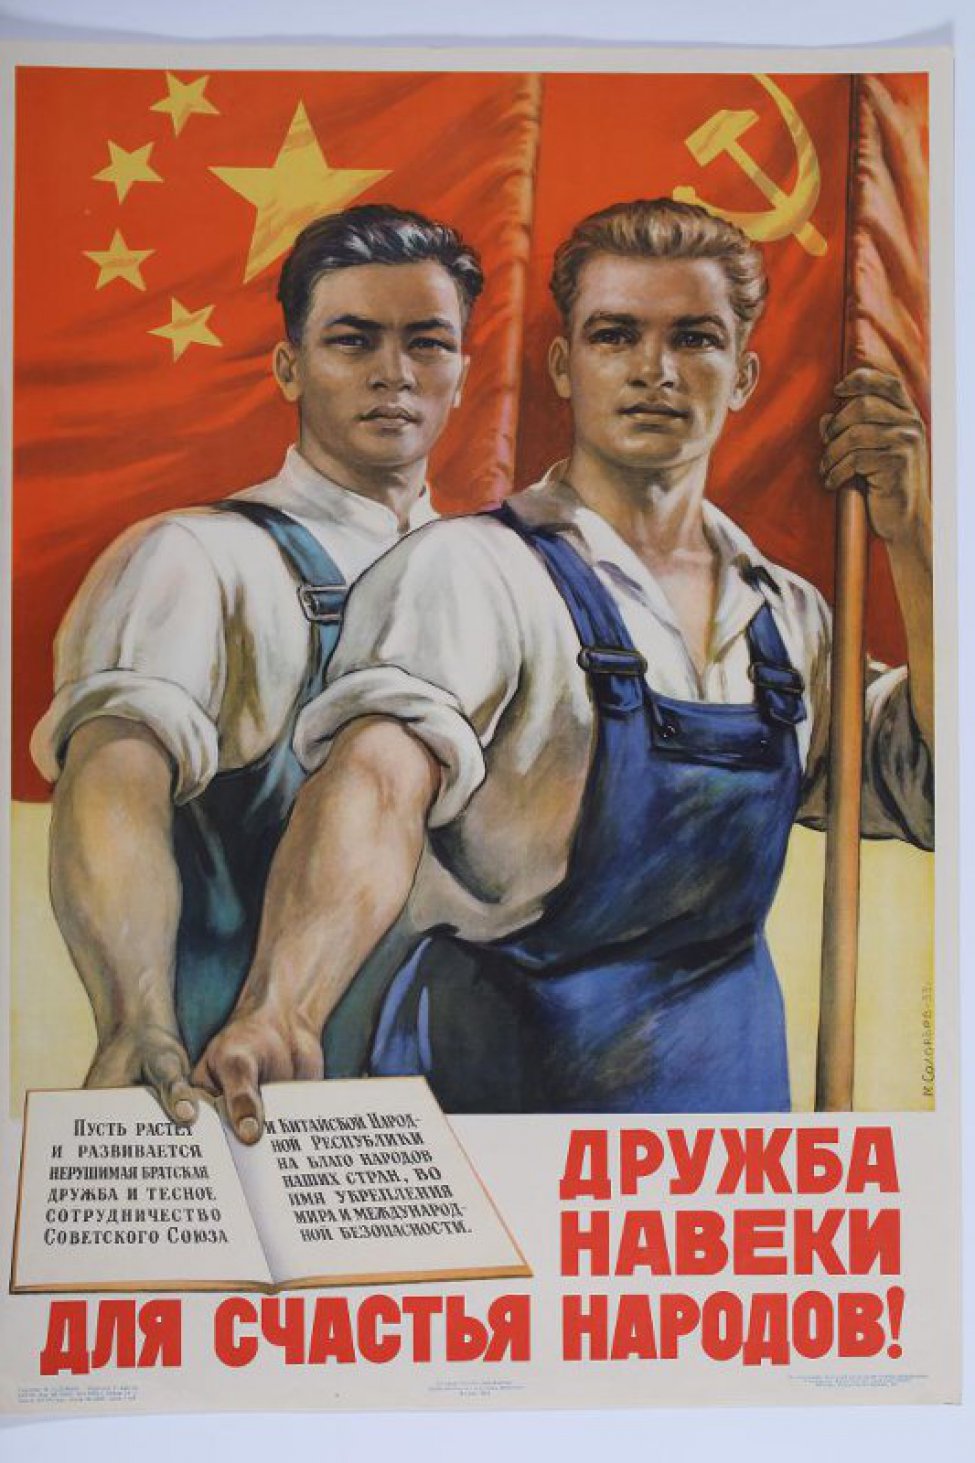 Изображены стоящие рядом в синих комбинезонах китайский и русский рабочие,в руках у них китайское и советское знамена. В других руках открытая книга с текстом:" Пусть развивается и растет"...